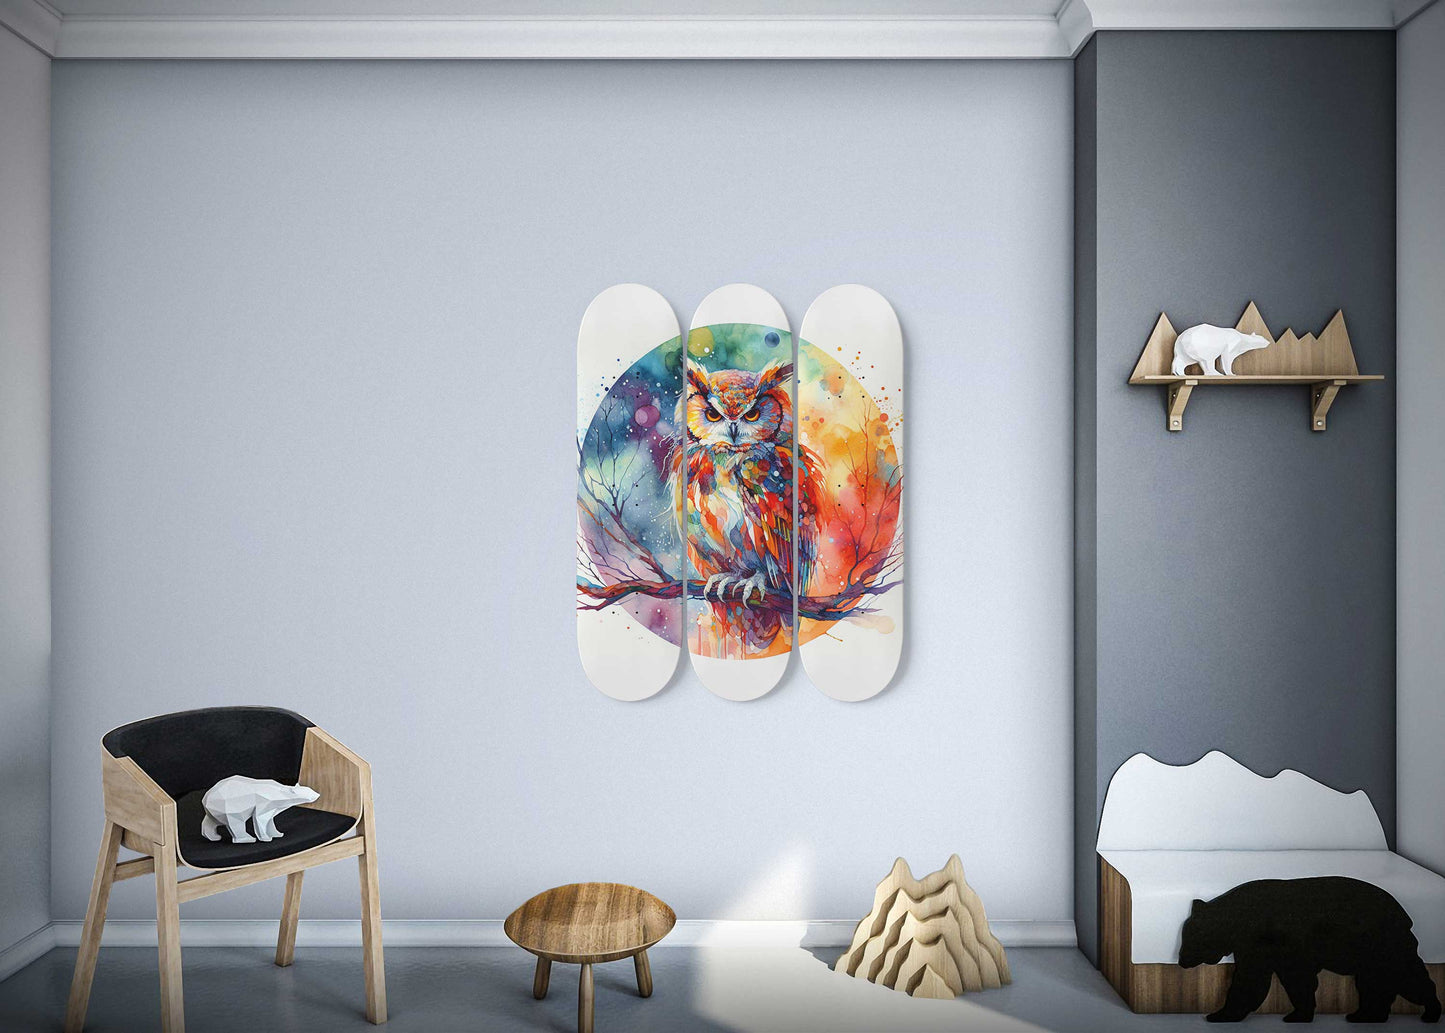 Owl#3.0 3-Deck Skateboard Wall Art